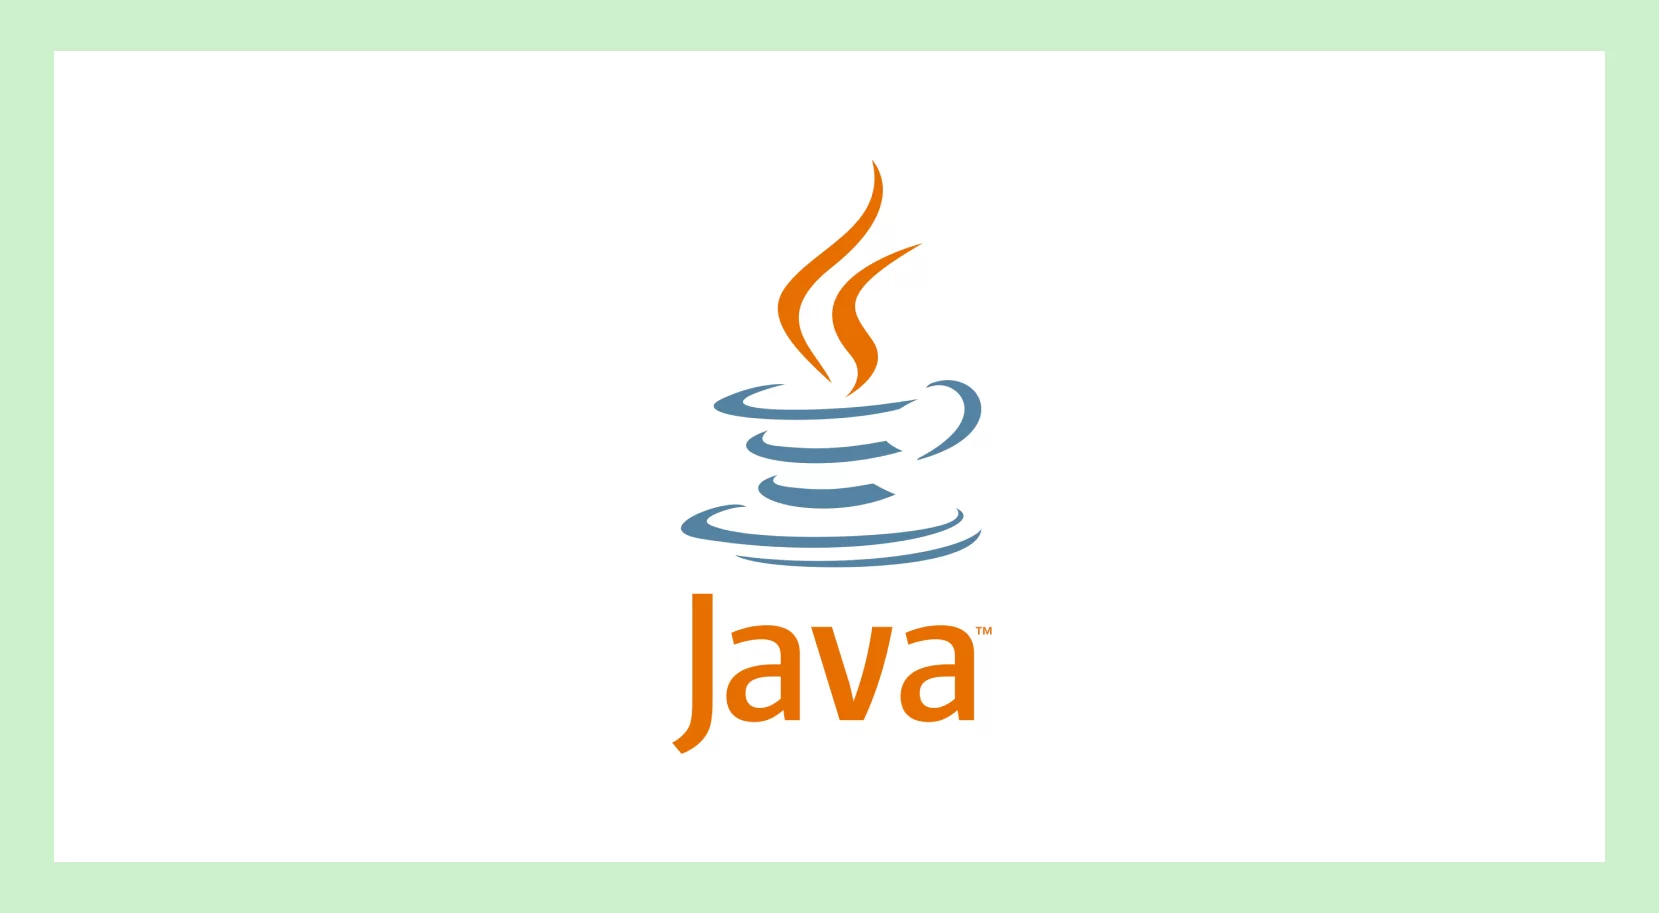 Логотип языка Java на белом фоне 